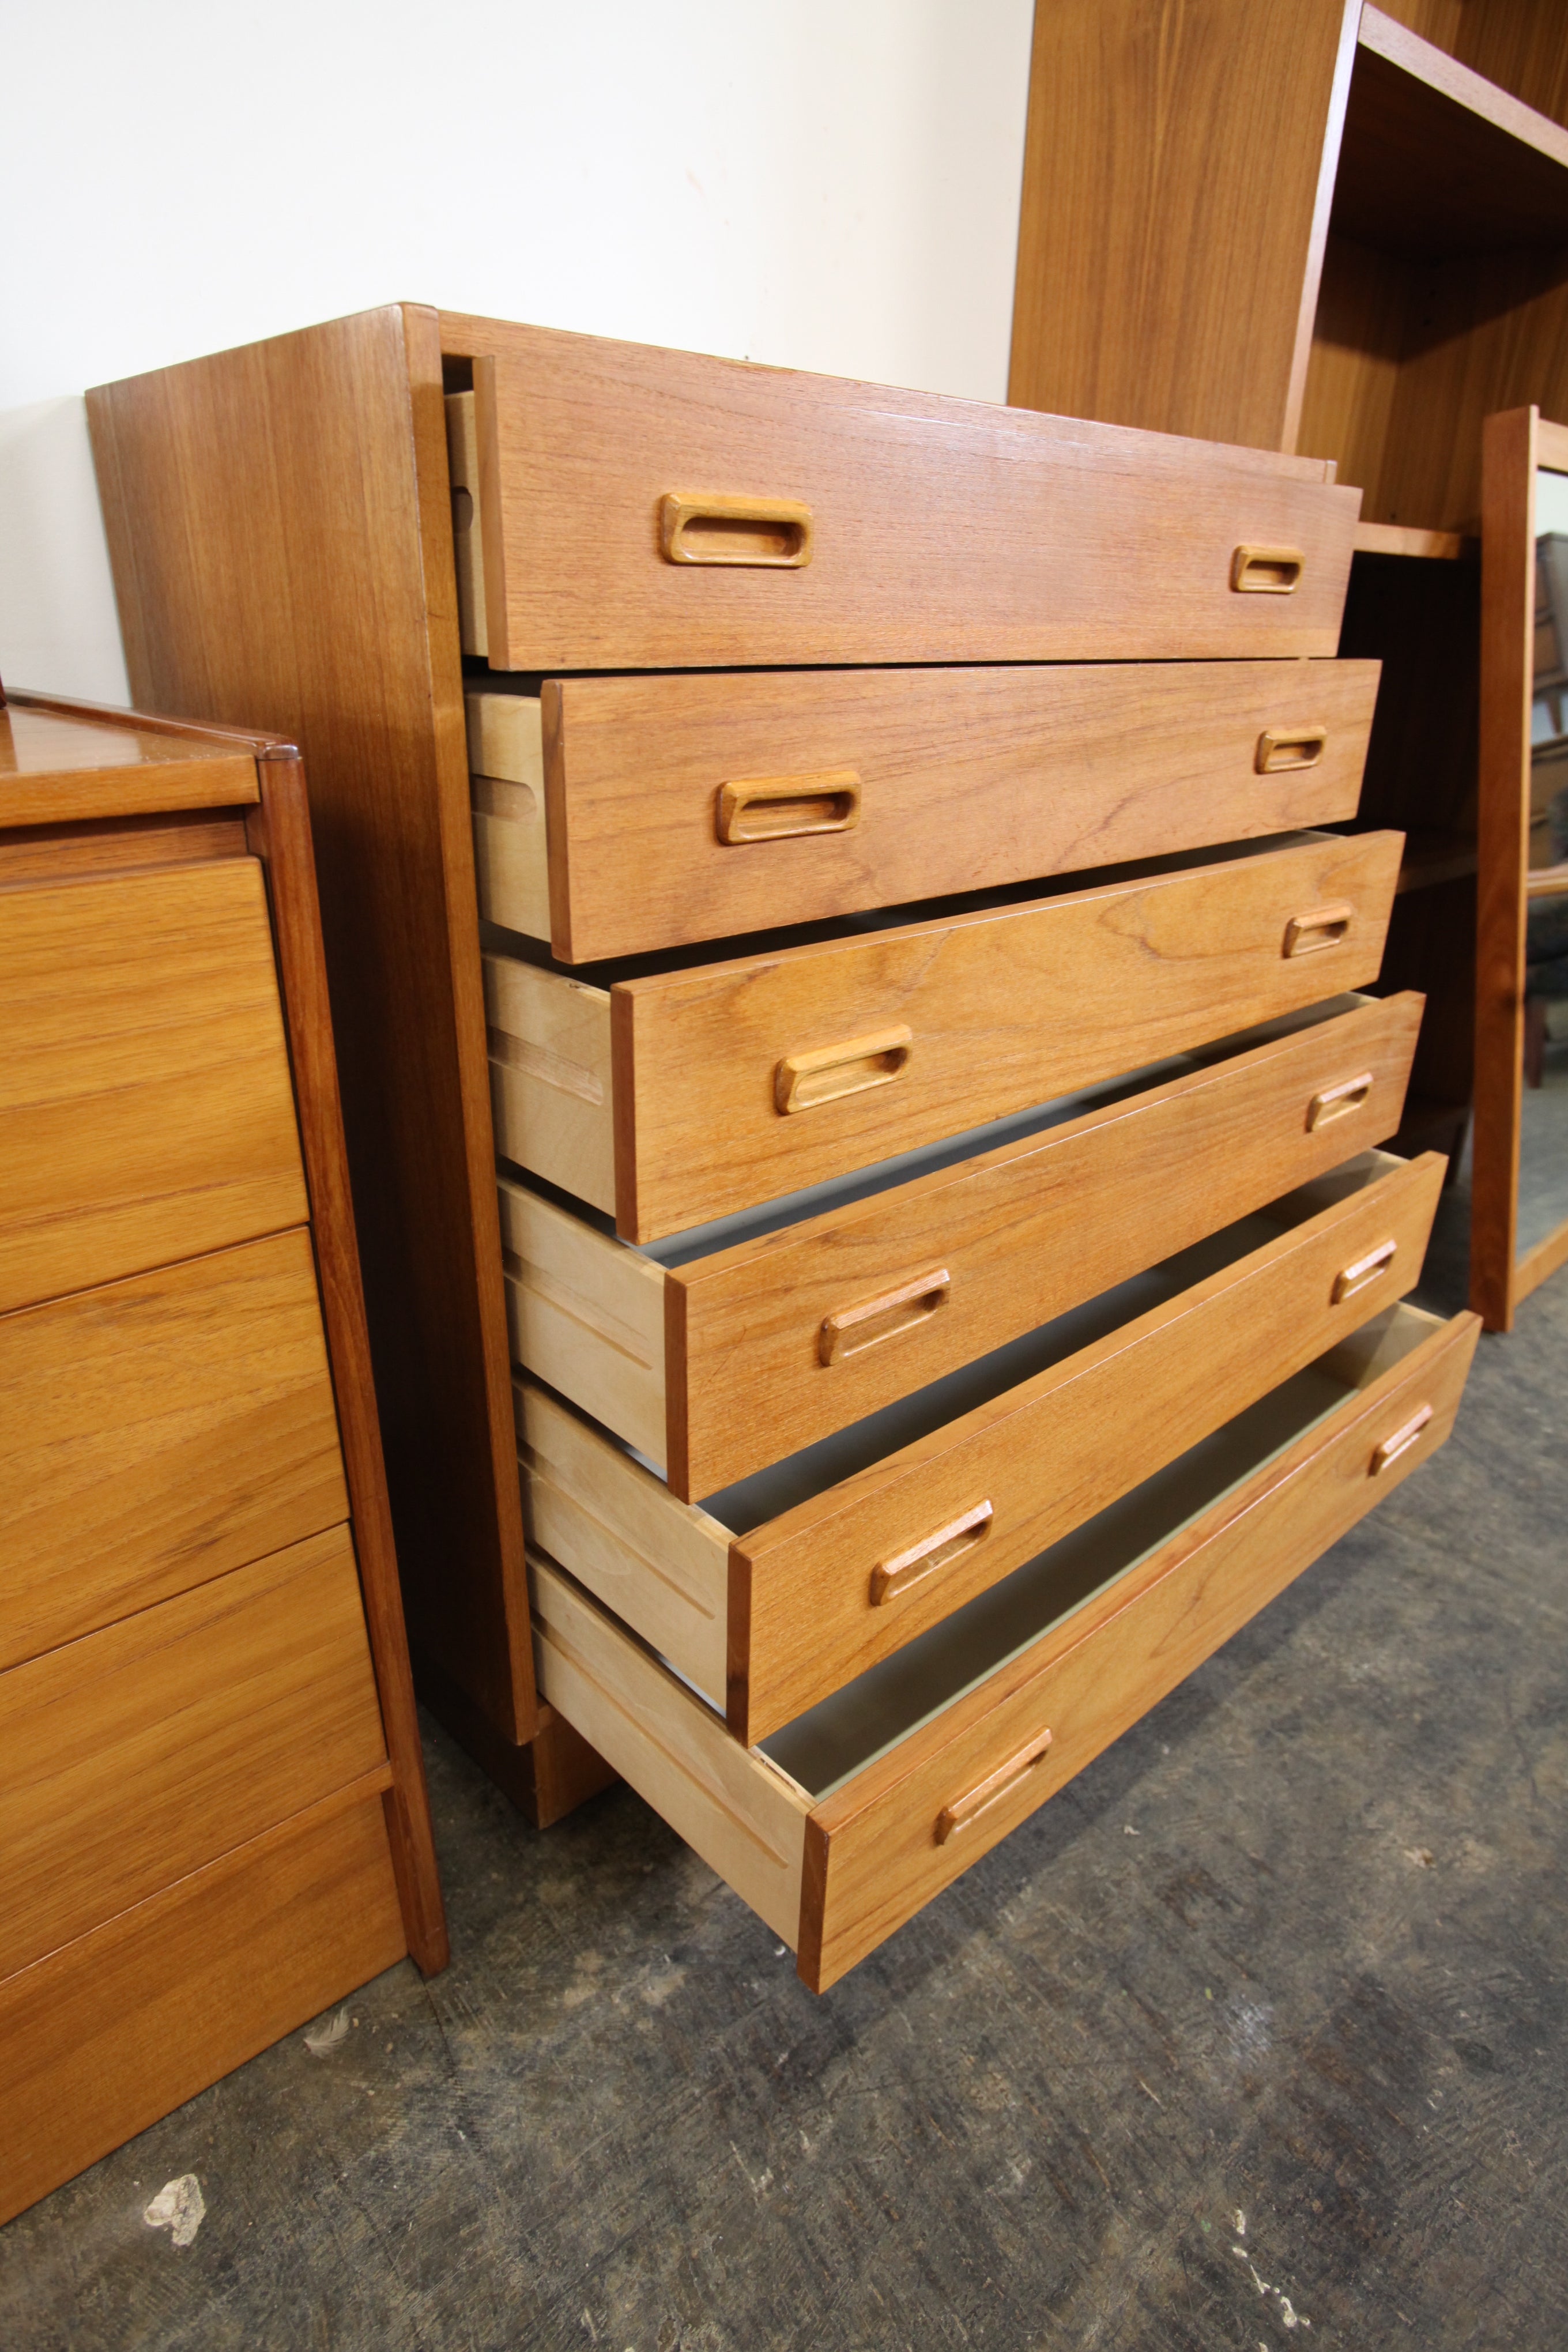 Vintage Teak 6 Drawer Tallboy Dresser (31"W x 15.5"D x 35.25"H)